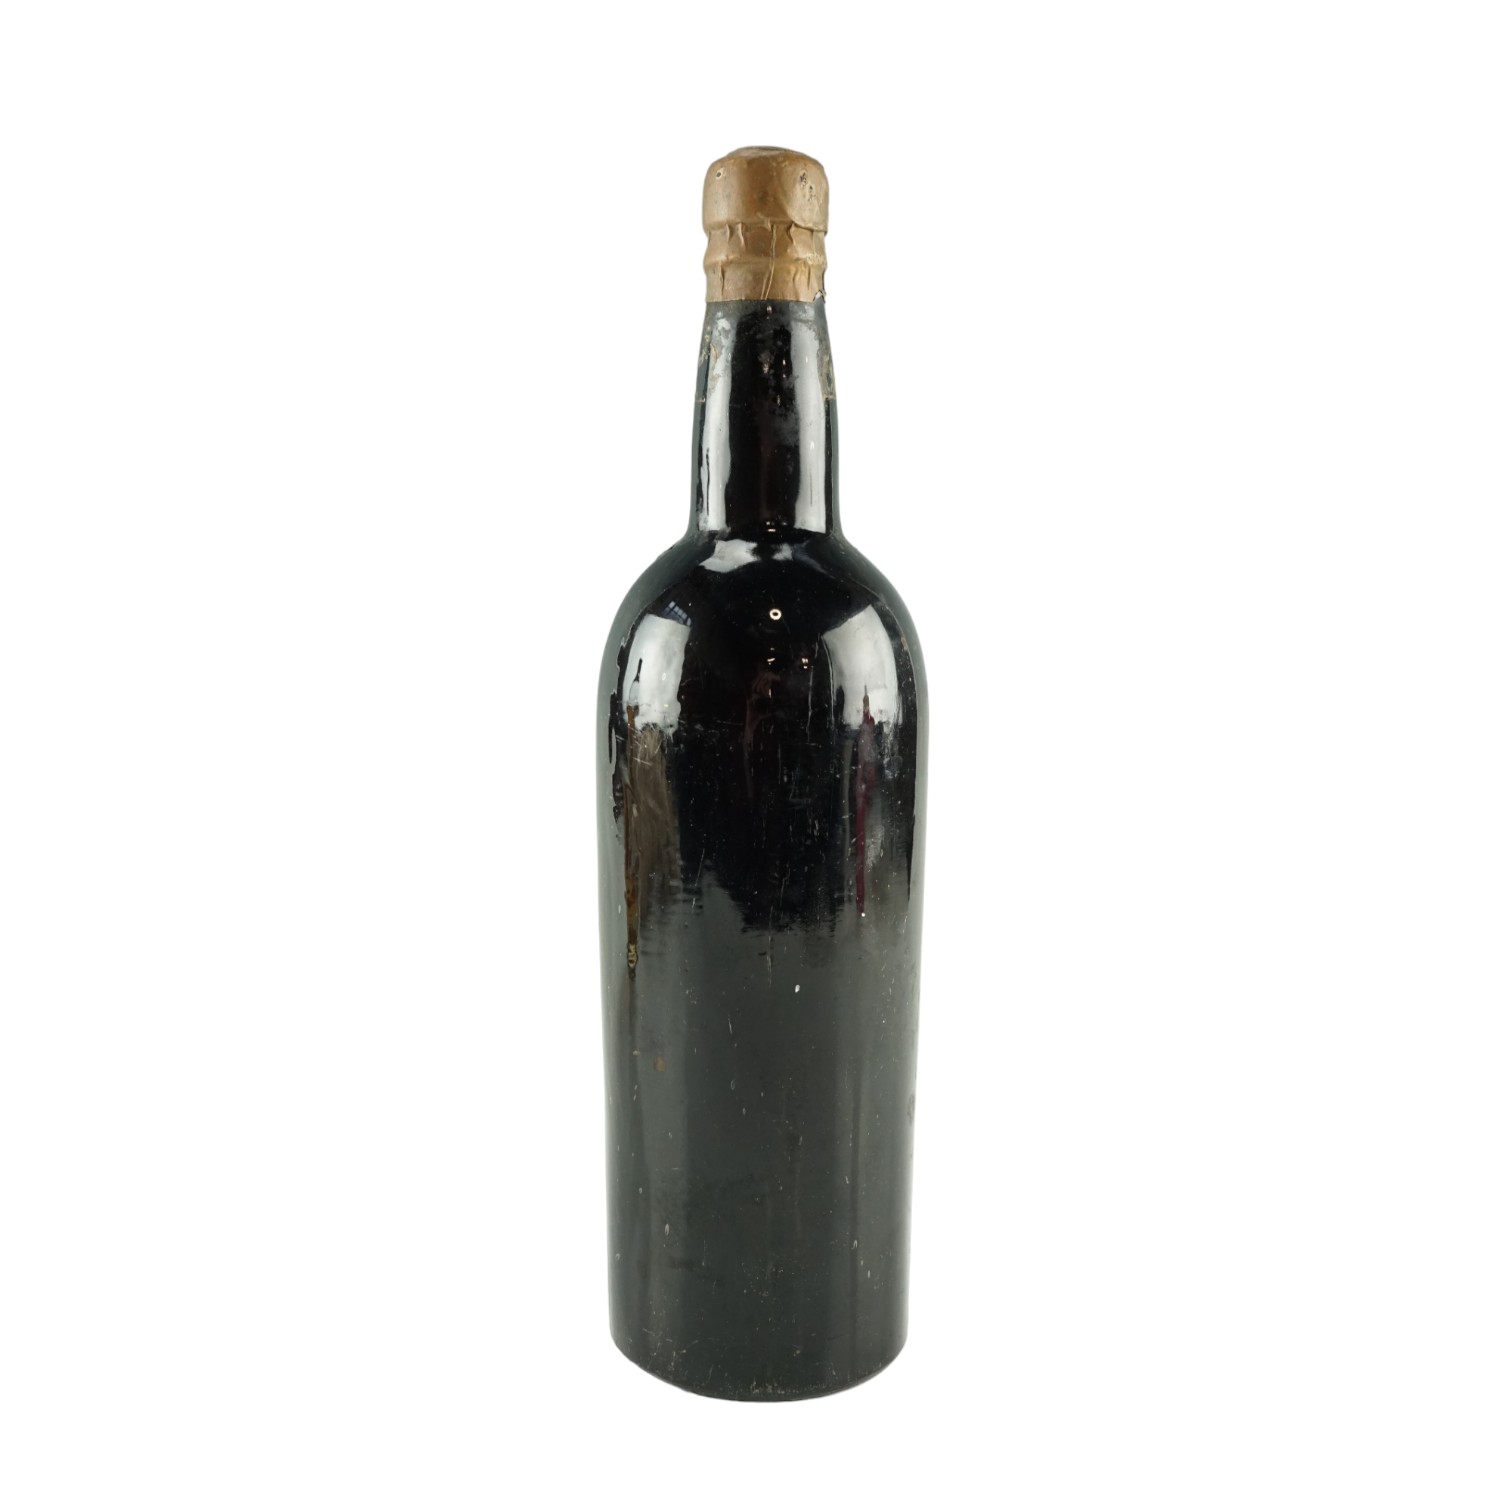 A bottle of Croft's 1927 vintage Port wine, 1400 g - Image 2 of 2